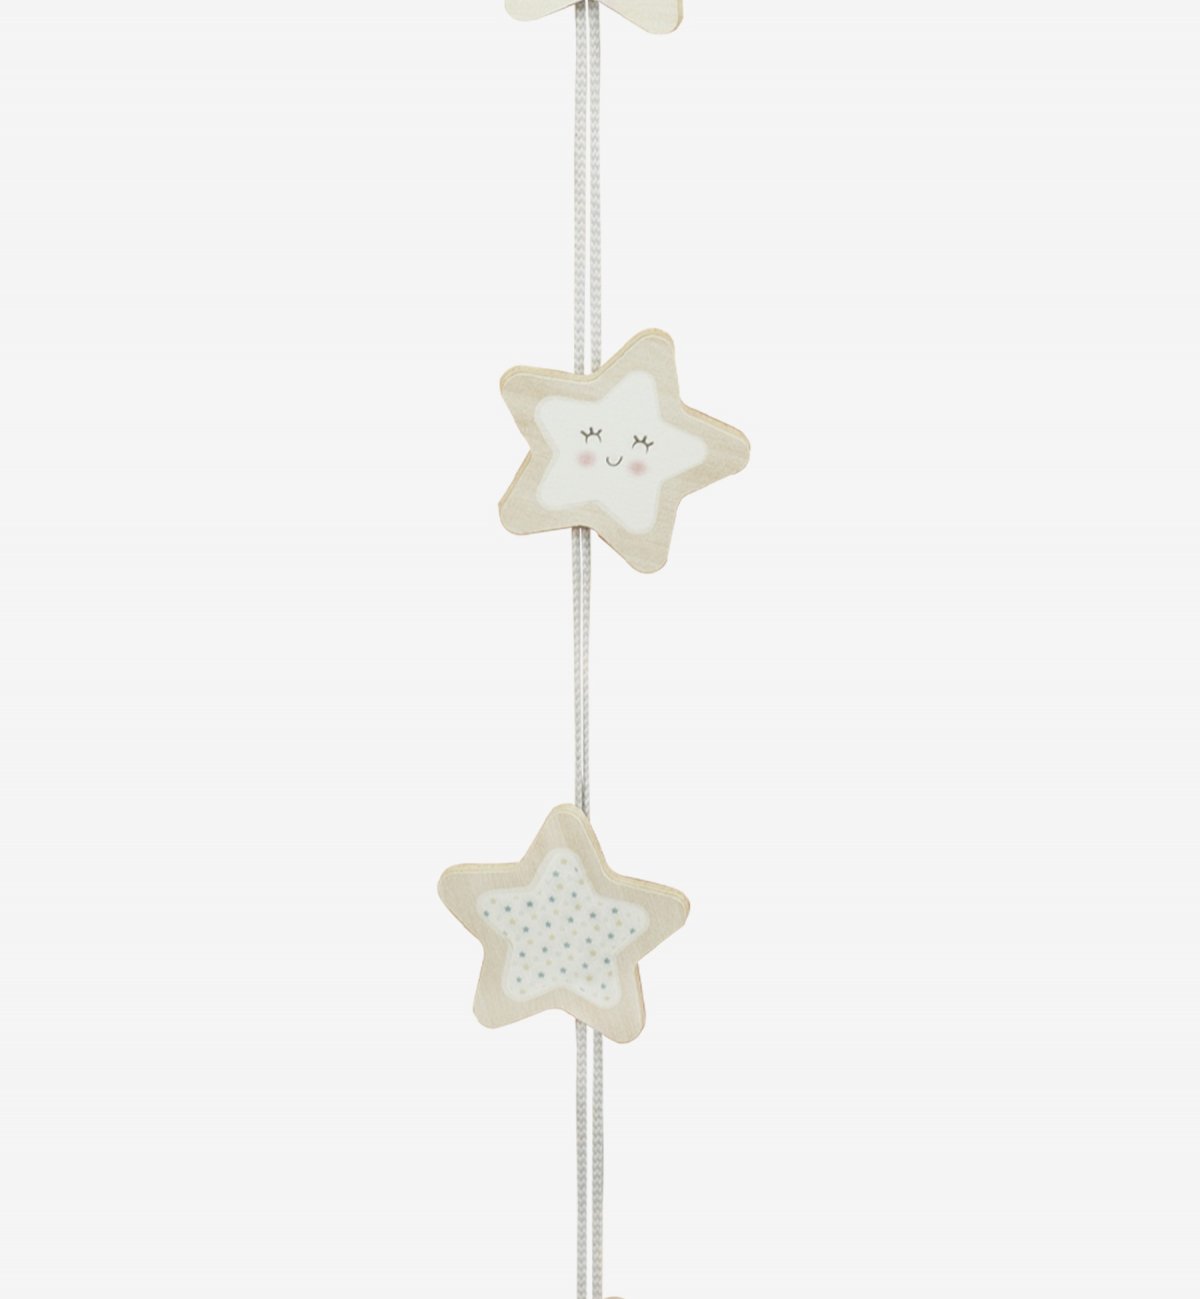 Ghirlanda decorativa in legno con motivi a stelle - Kadolis